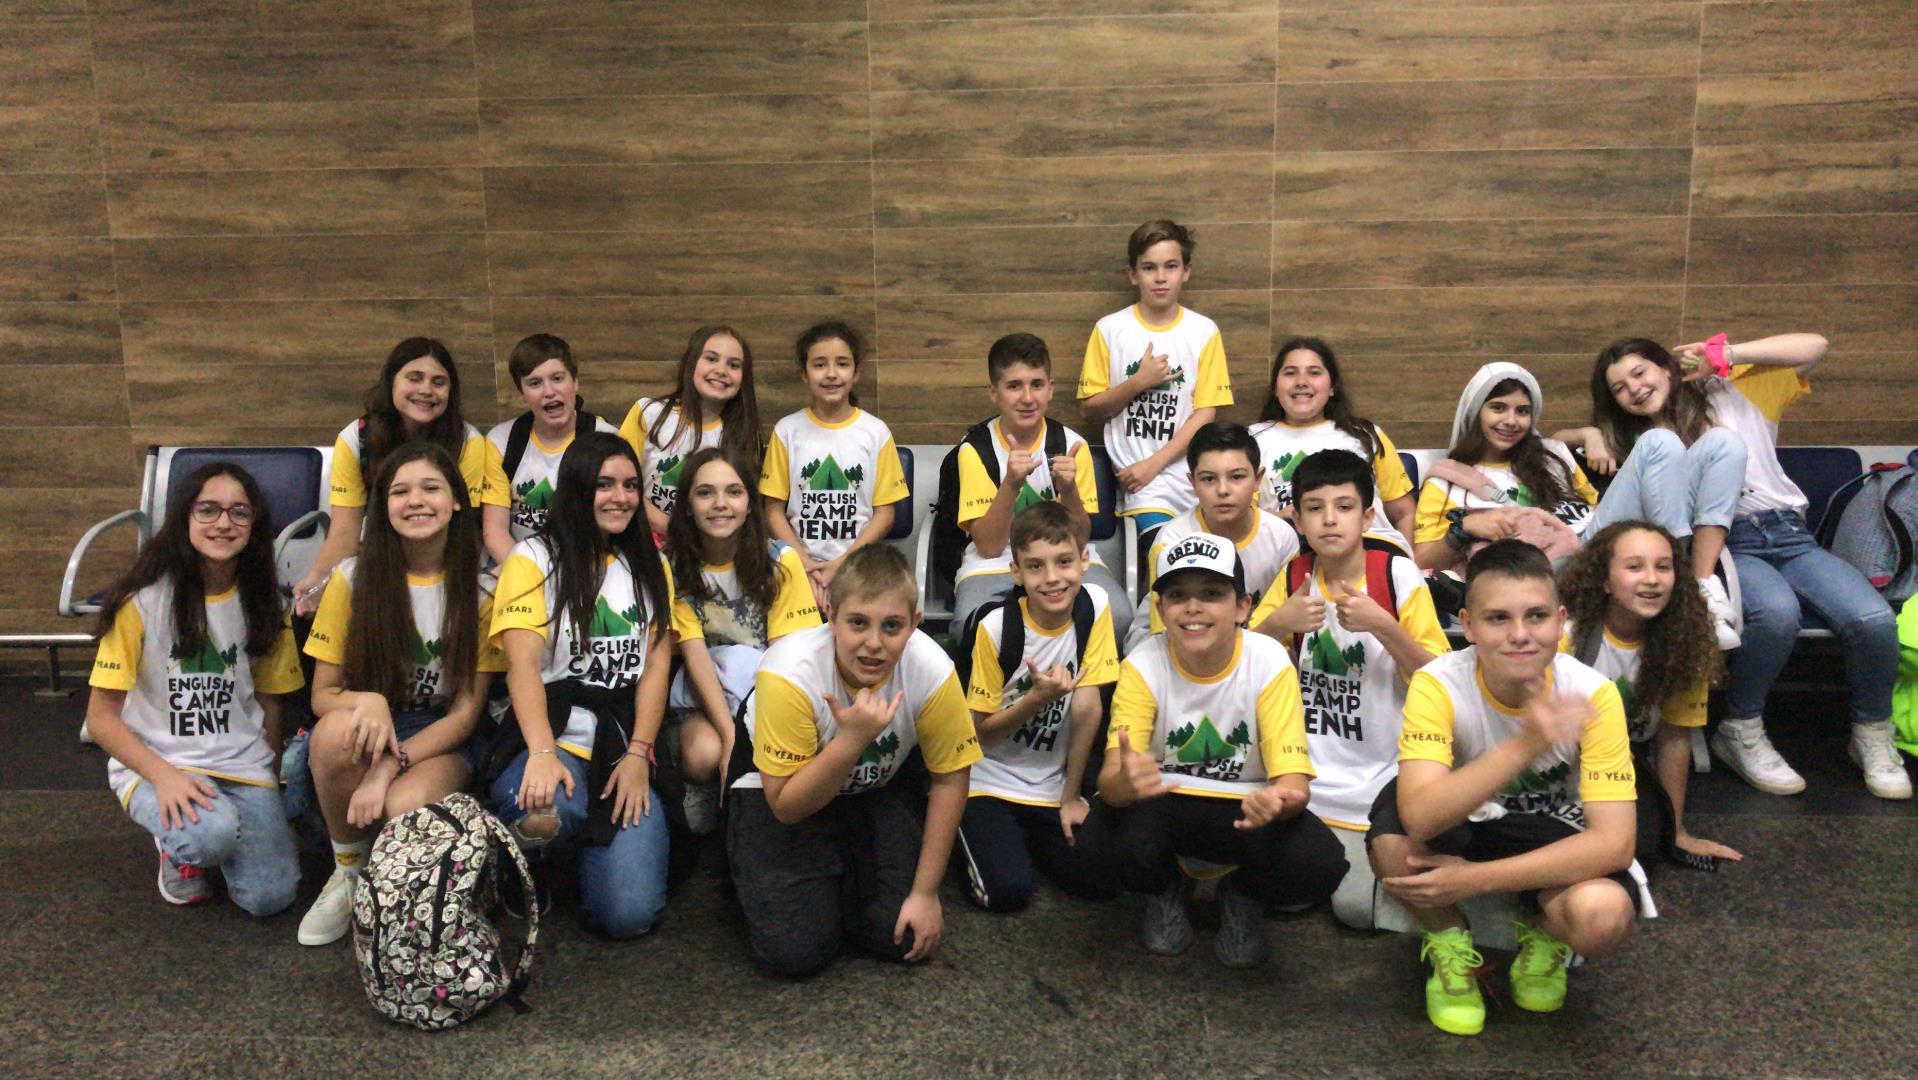 Estudantes bilíngues da IENH participam do English Camp em São Paulo